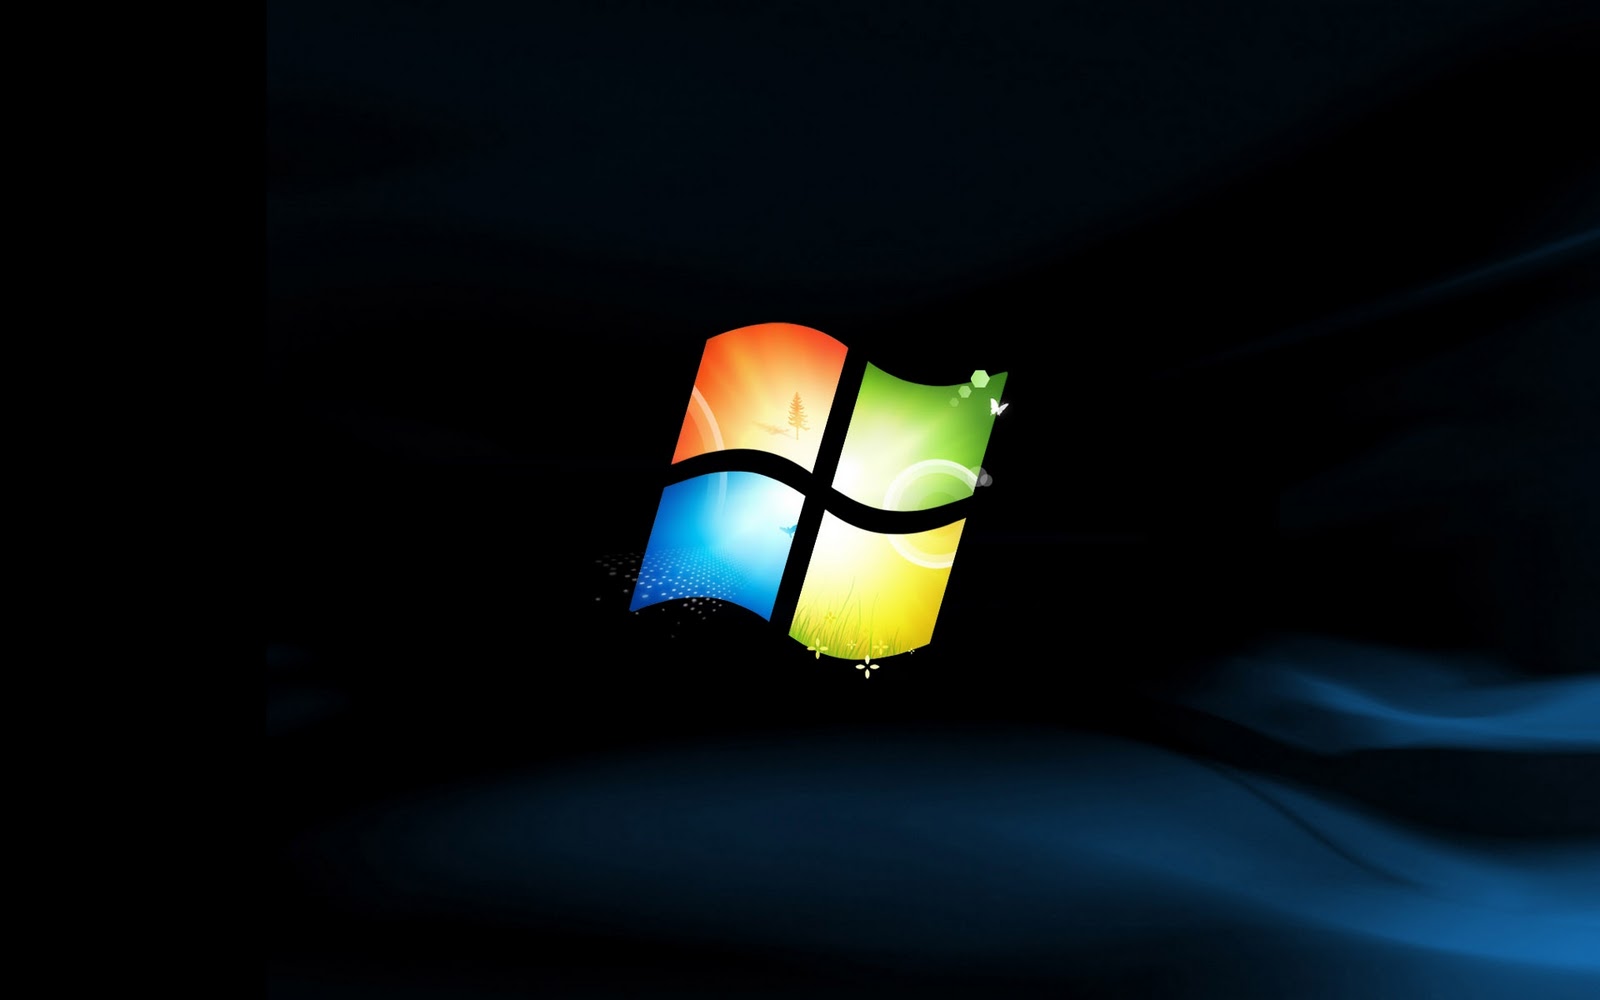 Hình nền Windows 7 đen đã trở nên cực kỳ phổ biến và được yêu thích bởi sự đơn giản nhưng tinh tế. Hình ảnh nền đen như đang đưa ta vào một không gian riêng tư và thư giãn. Hãy thử đổi hình nền máy tính của bạn với hình nền Windows 7 đen đang hot nhất hiện nay!